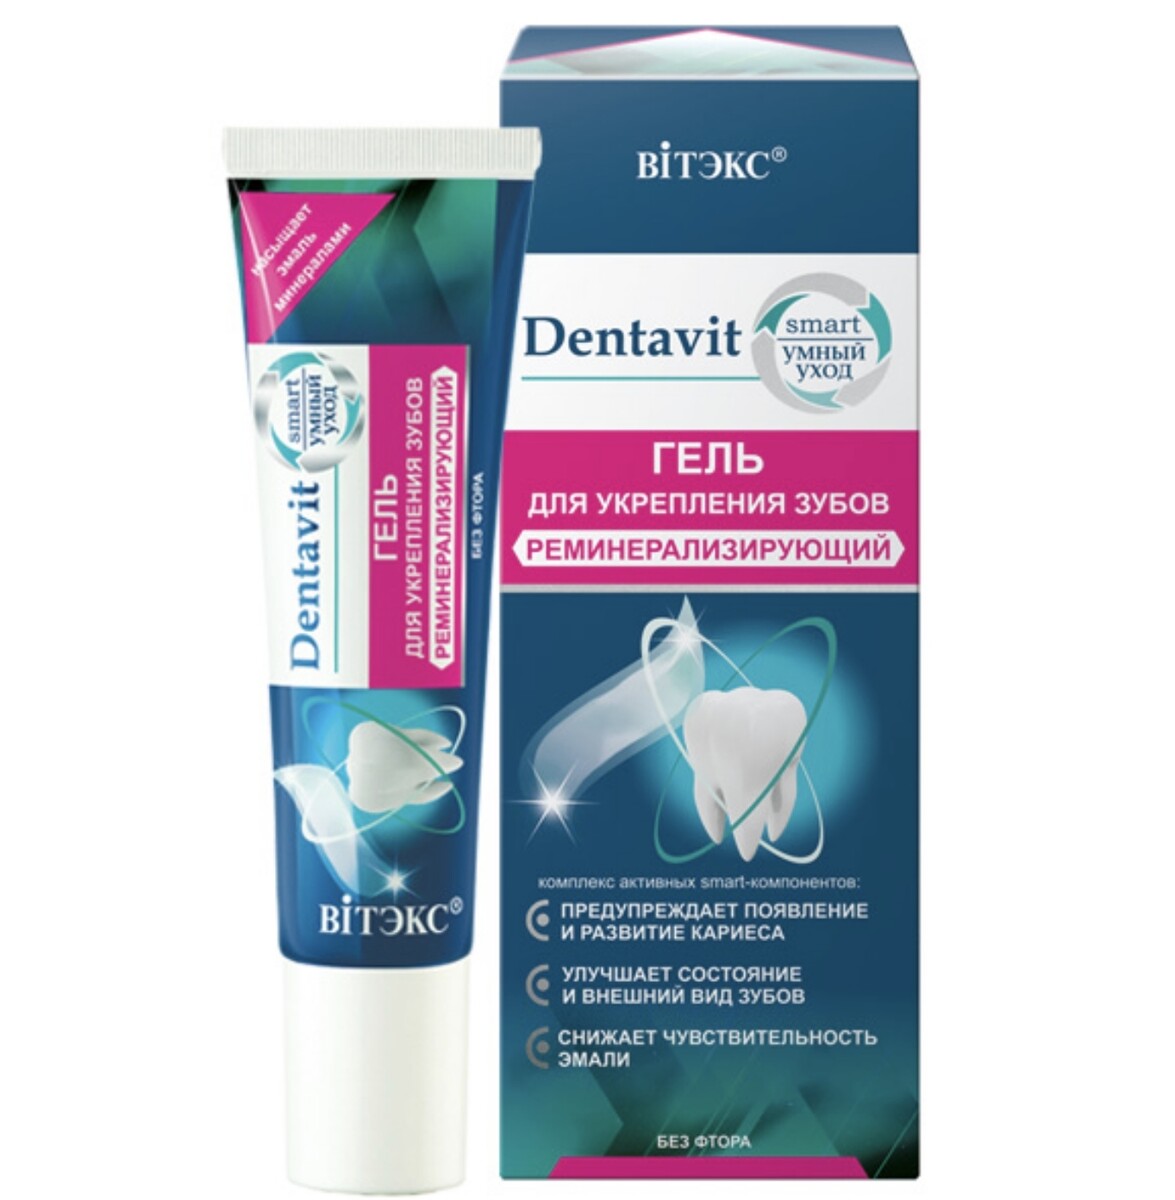 Dentavit-smart гель для укрепления зубов реминерализирующий (без фтора) 30г (без коробки) дальномер лазерный condtrol smart 20